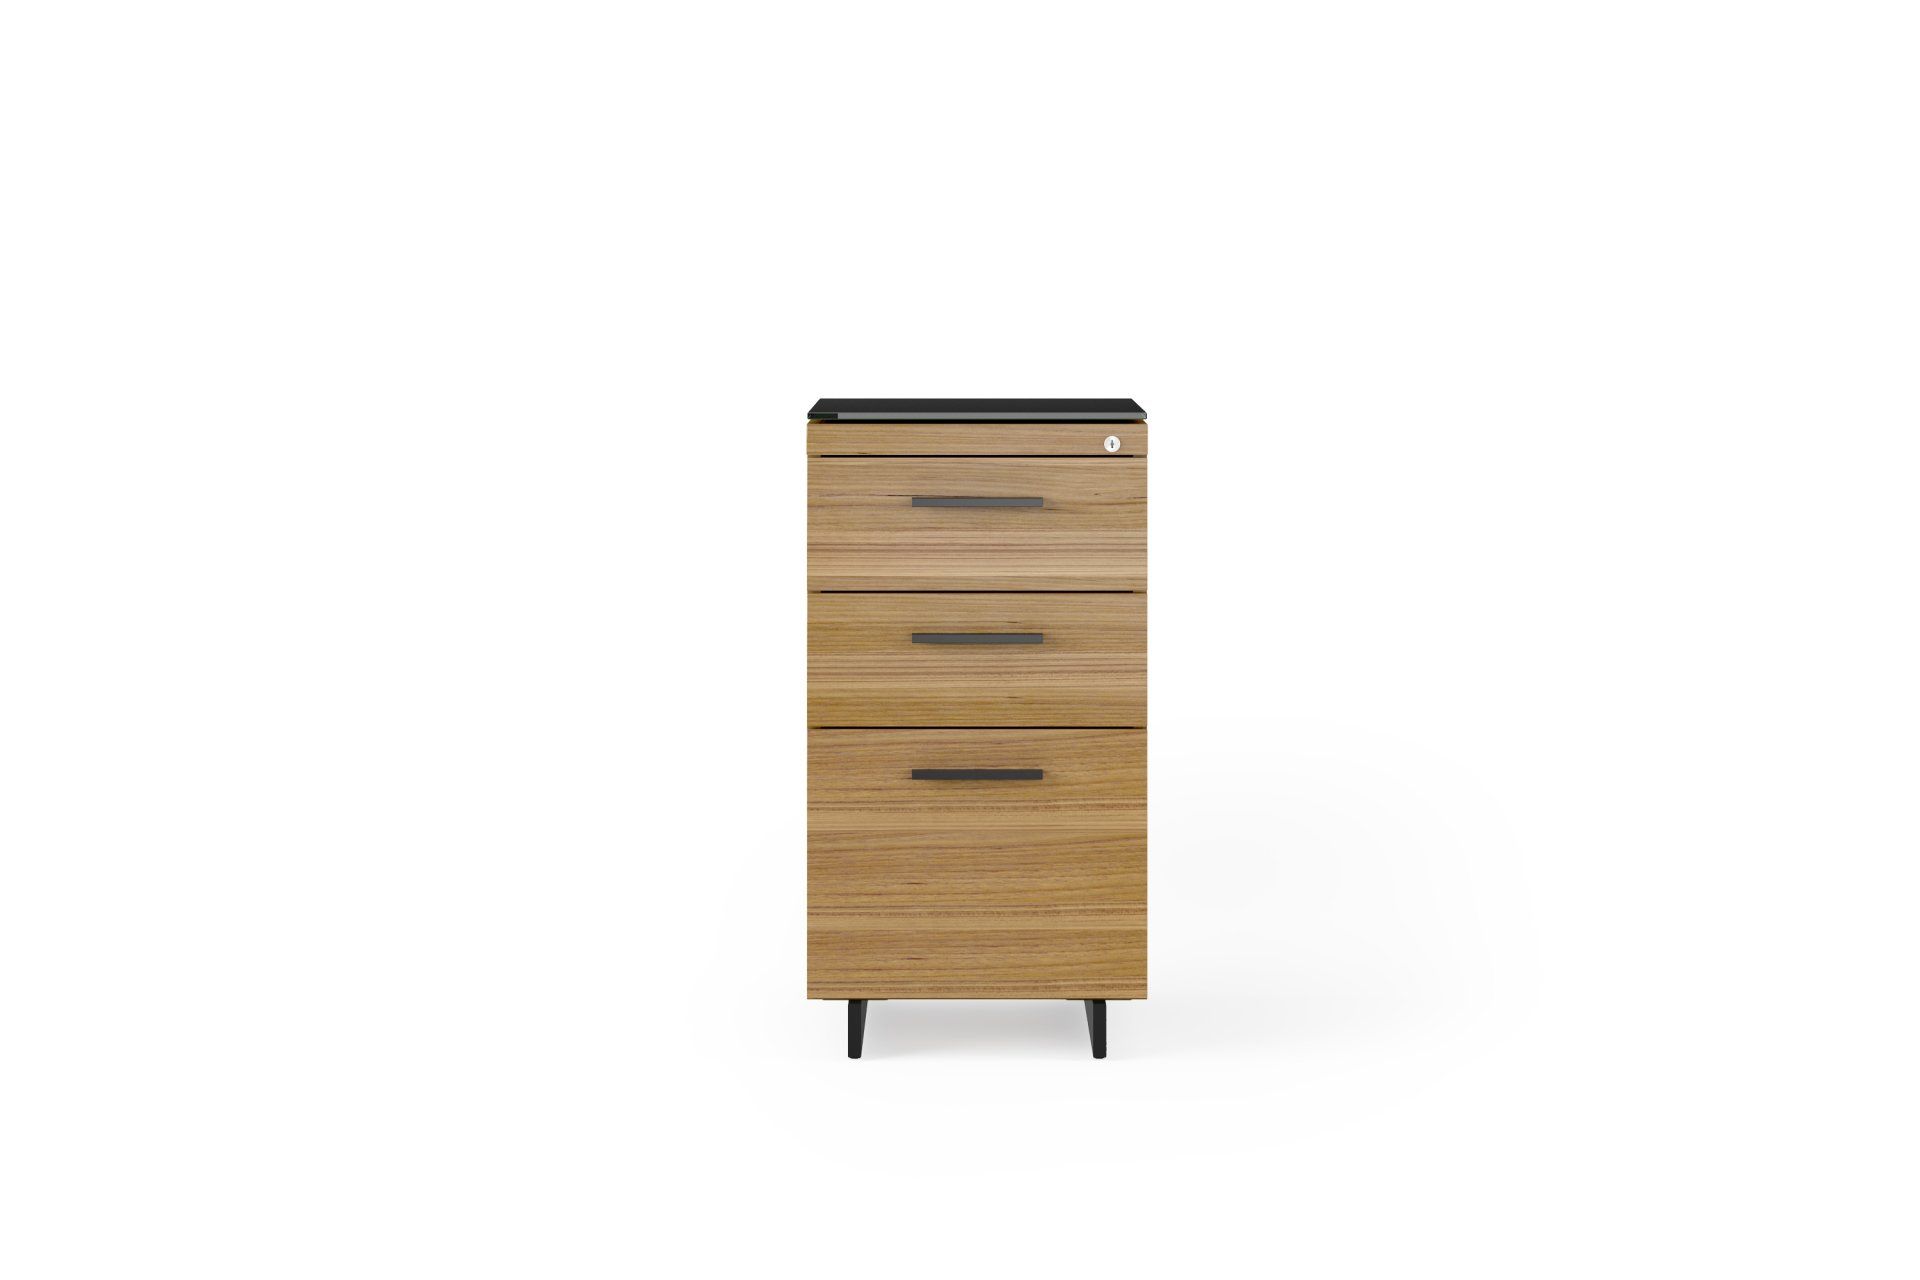 sequel-20-6114-3-drawer-file-storage-cabinet